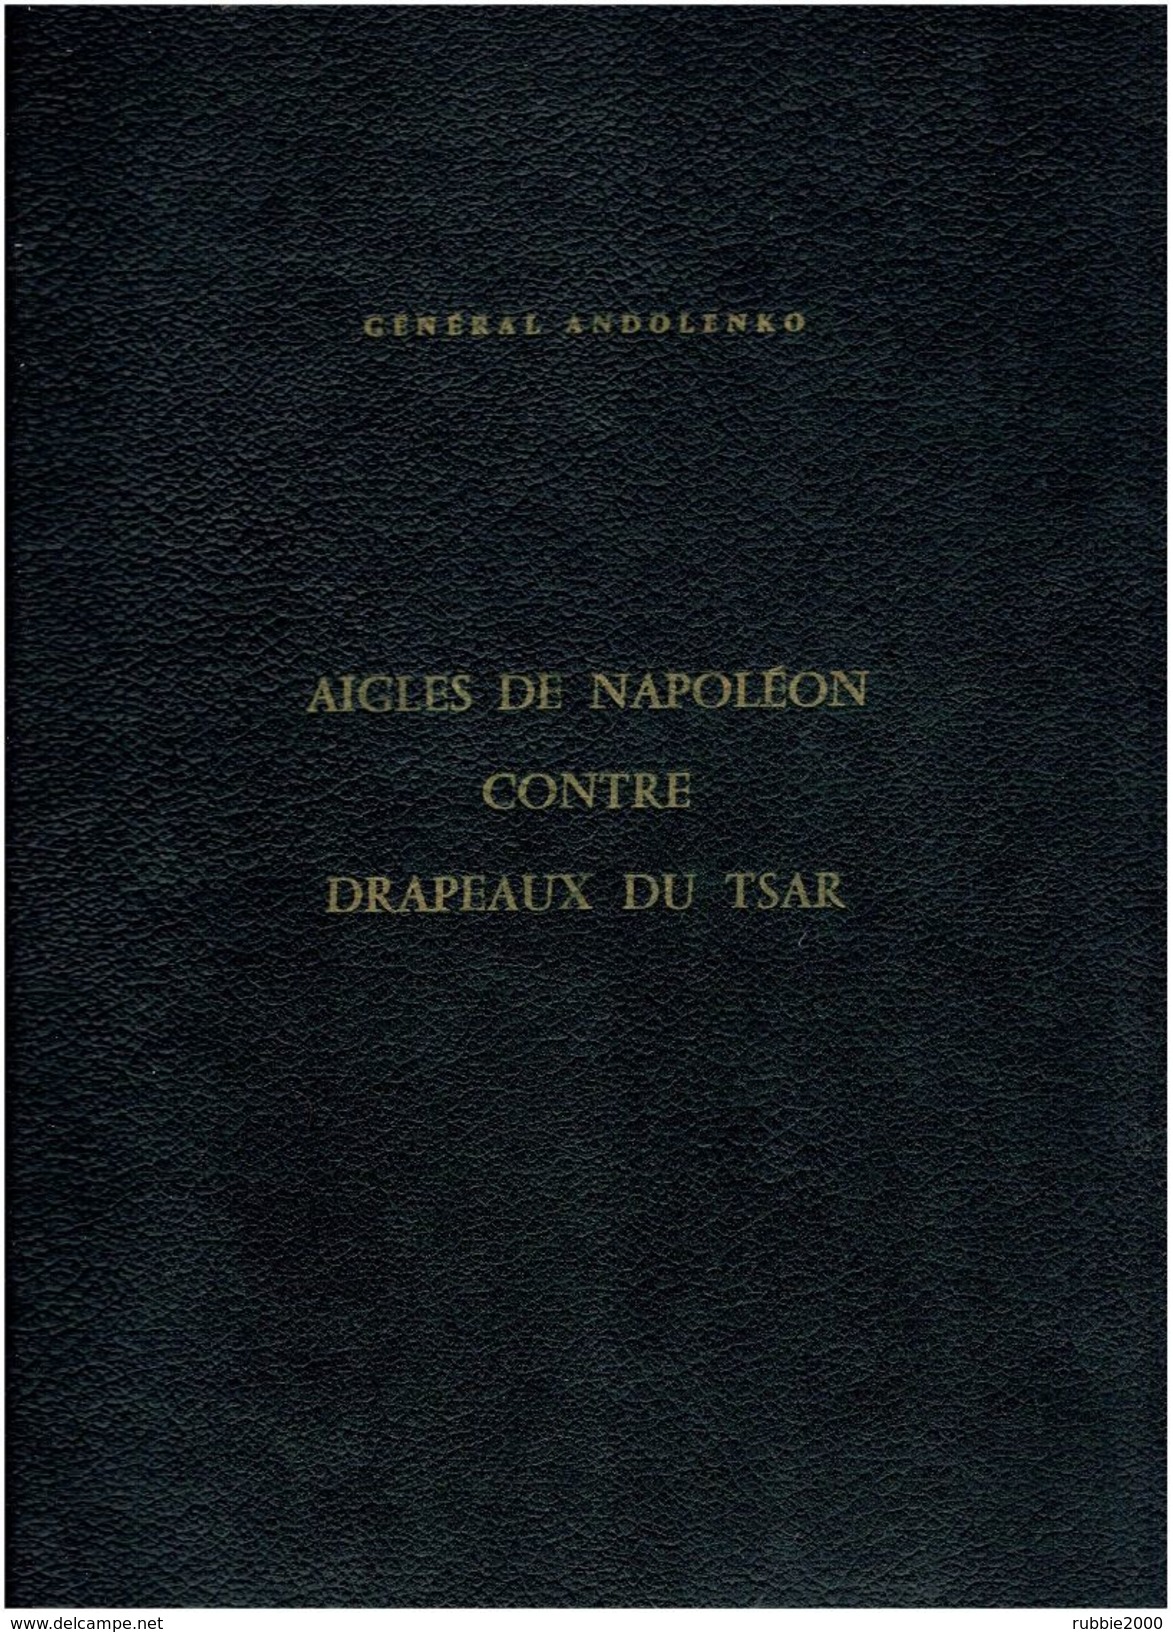 AIGLES DE NAPOLEON CONTRE DRAPEAUX DU TSAR 1799 A 1814 DRAPEAUX RUSSIE RUSSE FRANCE EMPIRE AUSTERLITZ  1969 ANDOLENKO - Drapeaux